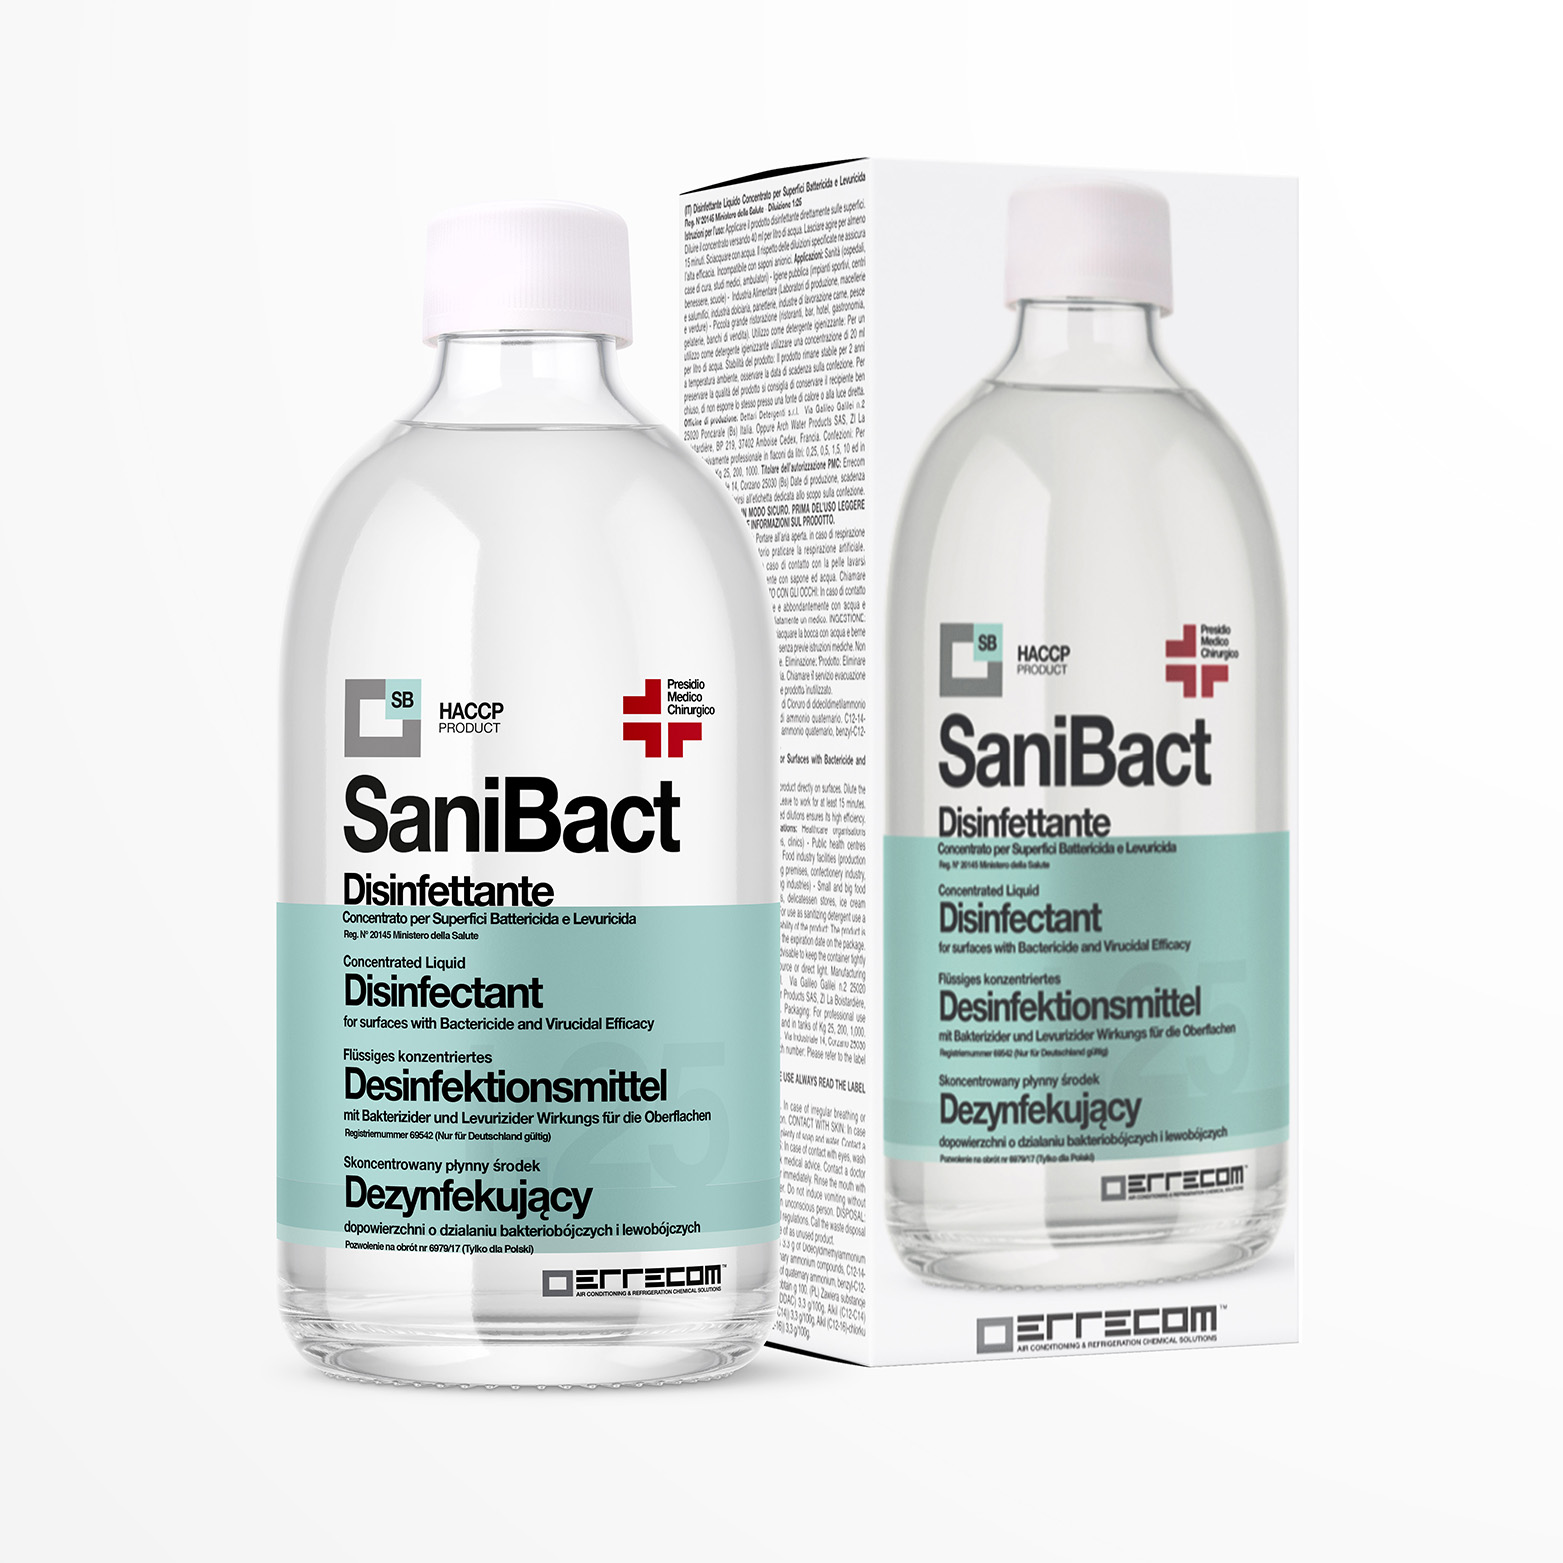 SANIBACT Disinfettante liquido per Superfici, Battericida, Levuricida e Virucida (Presidio Medico Chirurgico) - Flacone 500 ml - Confezione n° 12 pz. - Foto 1 